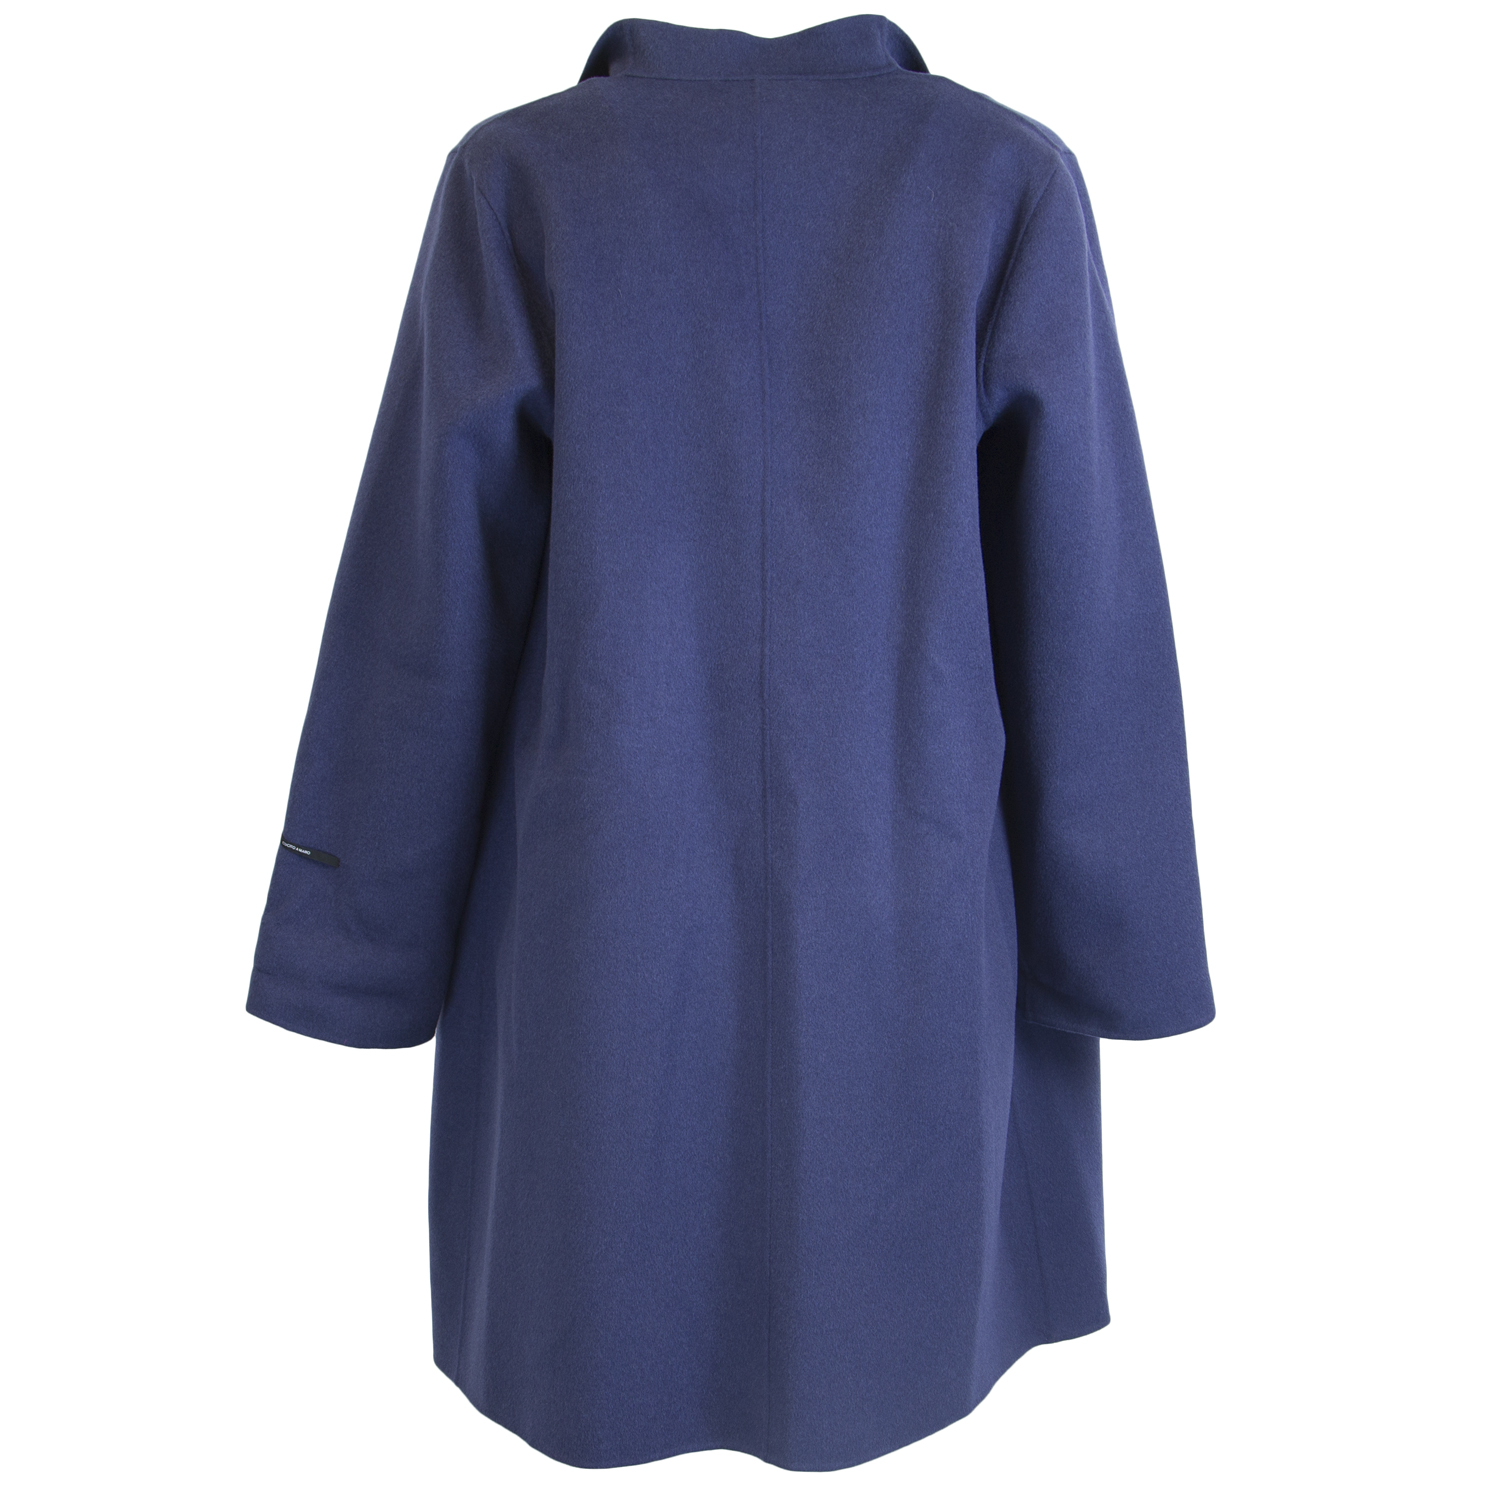 MARINA RINALDI Women's Teo Double Face Wool Jacket $1365 NWT | eBay